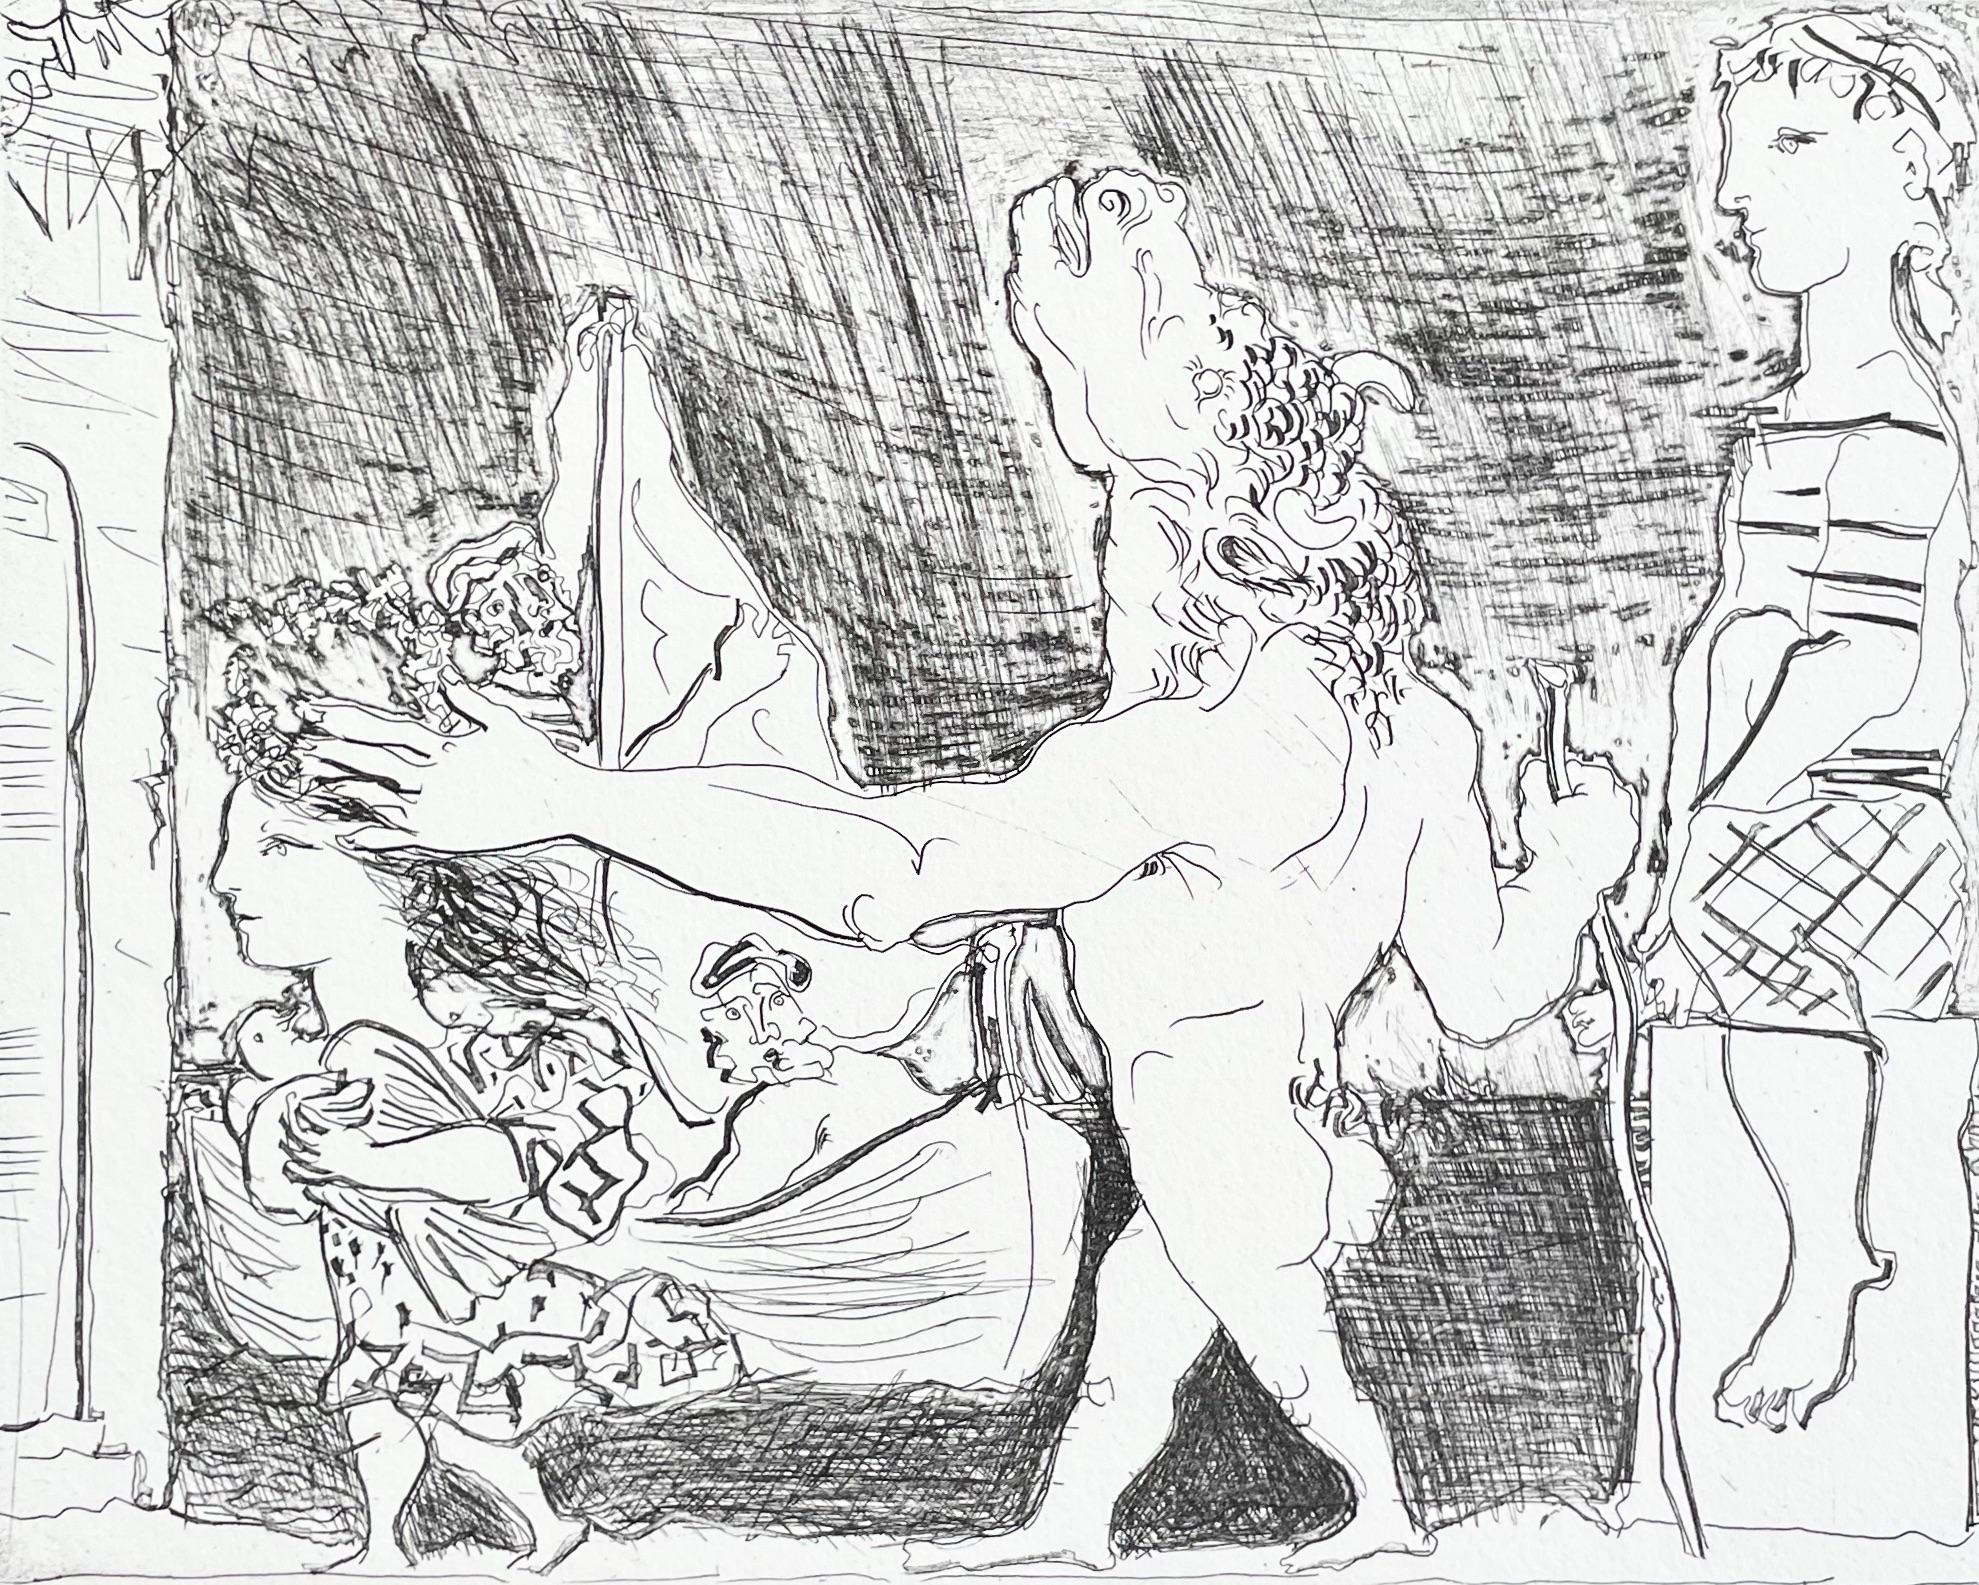 Picasso, Minotaure aveugle guidé dans la Nuit par une Petite (after)